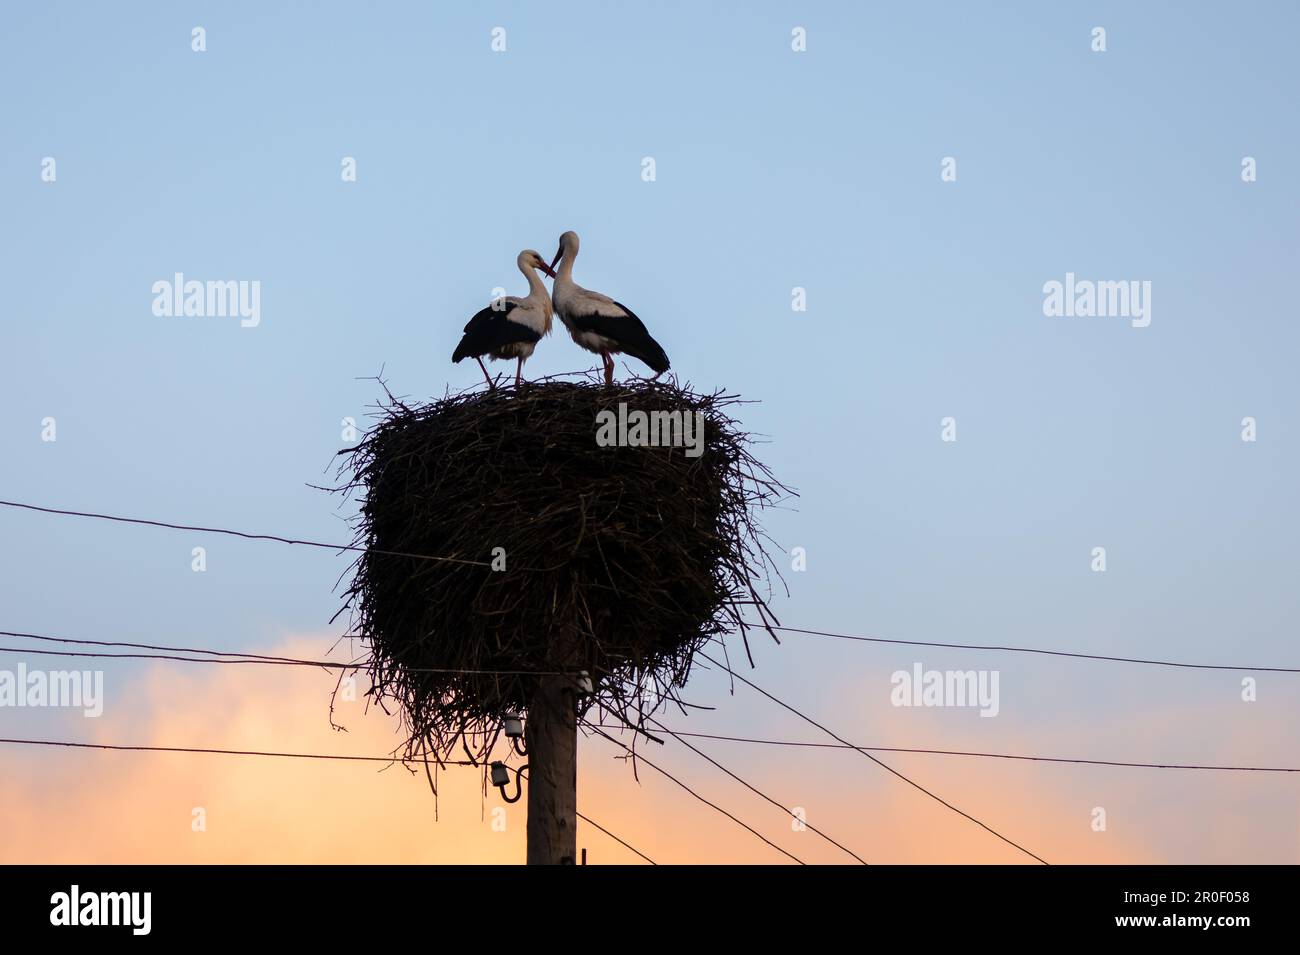 Una coppia di cicogne bianche costruisce il loro nido nella stagione primaverile. La foto cattura l'essenza della fotografia di uccelli, mostrando l'habitat naturale di queste cicogne Foto Stock